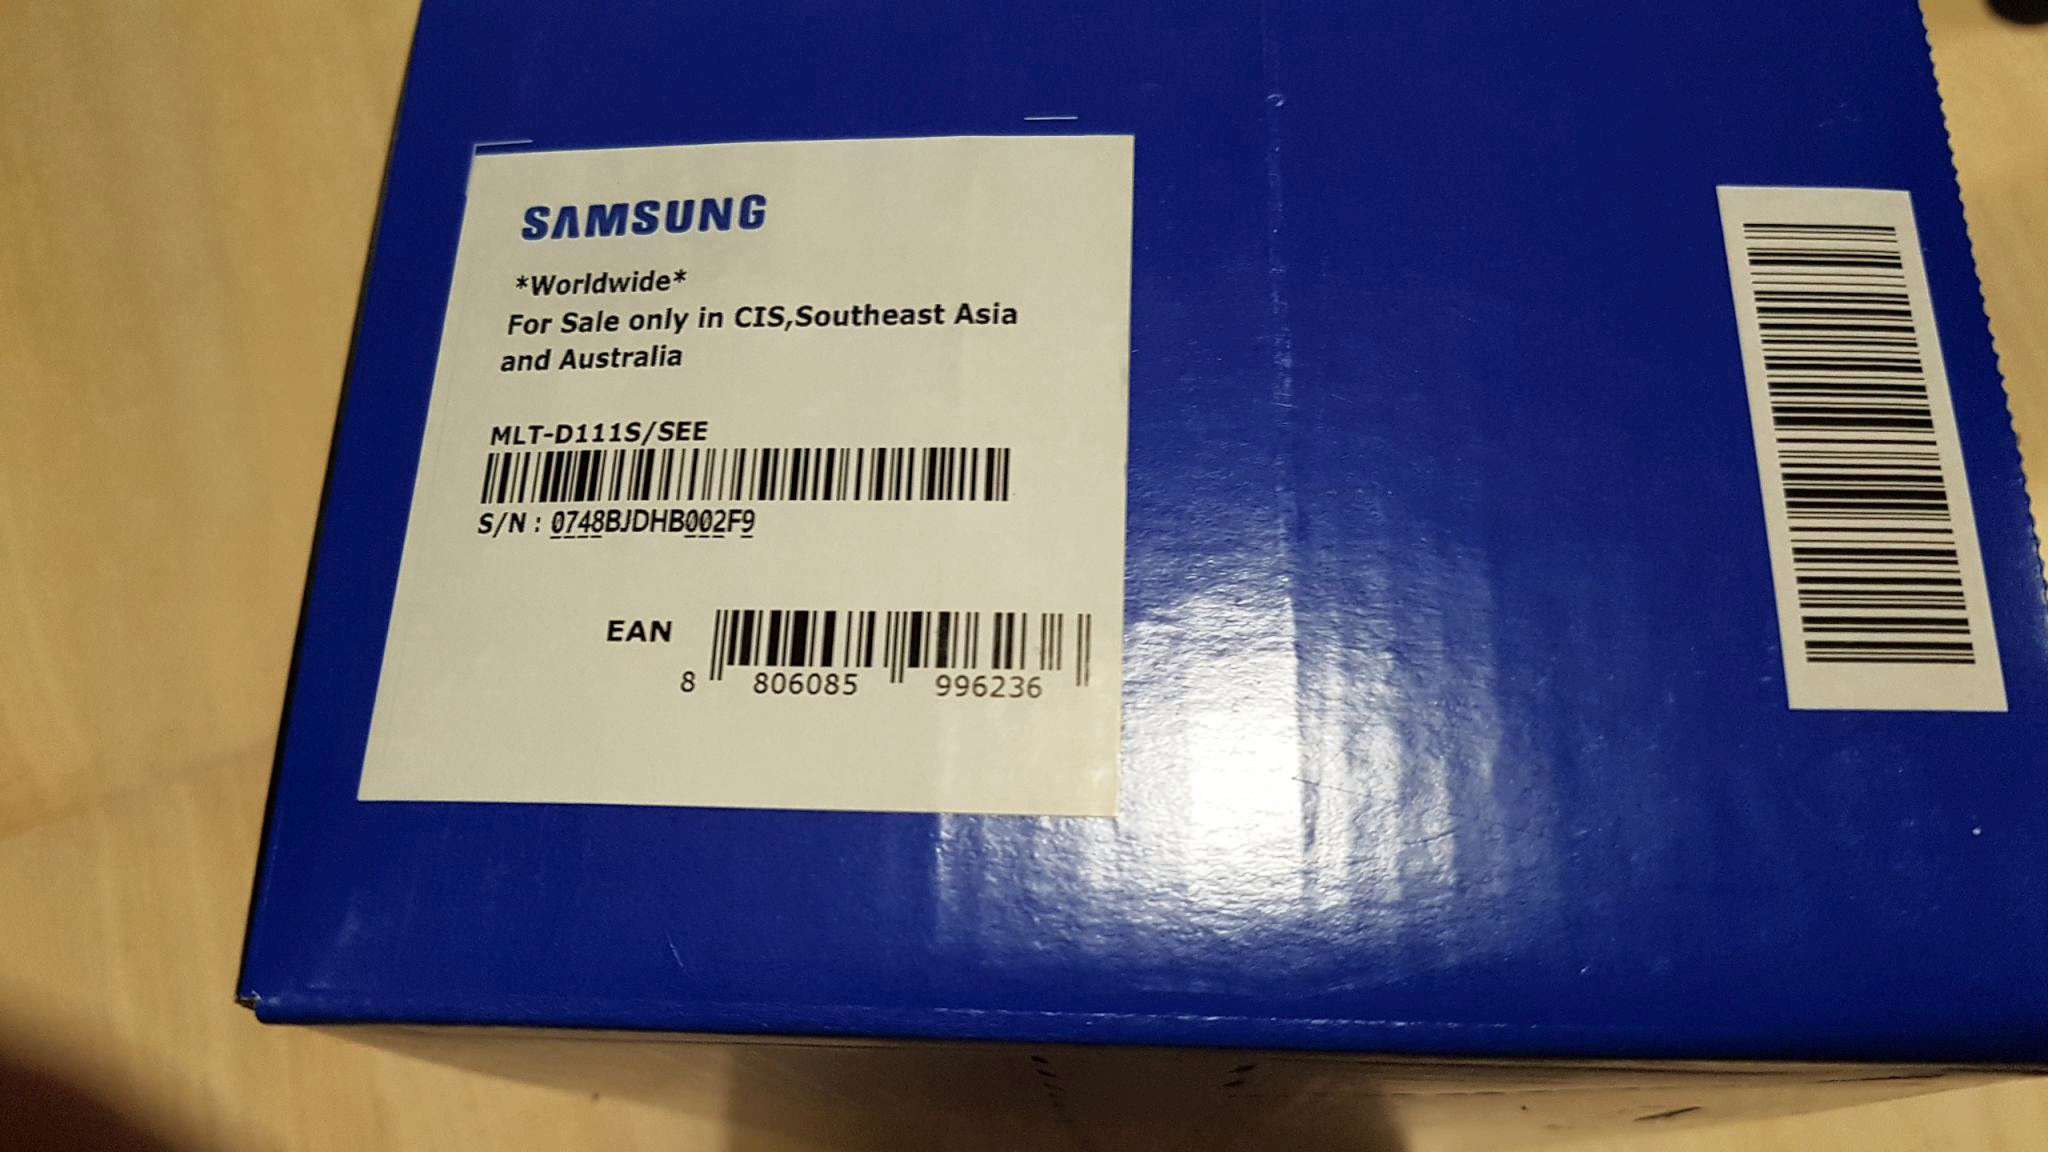 Купить Картридж Samsung D111s